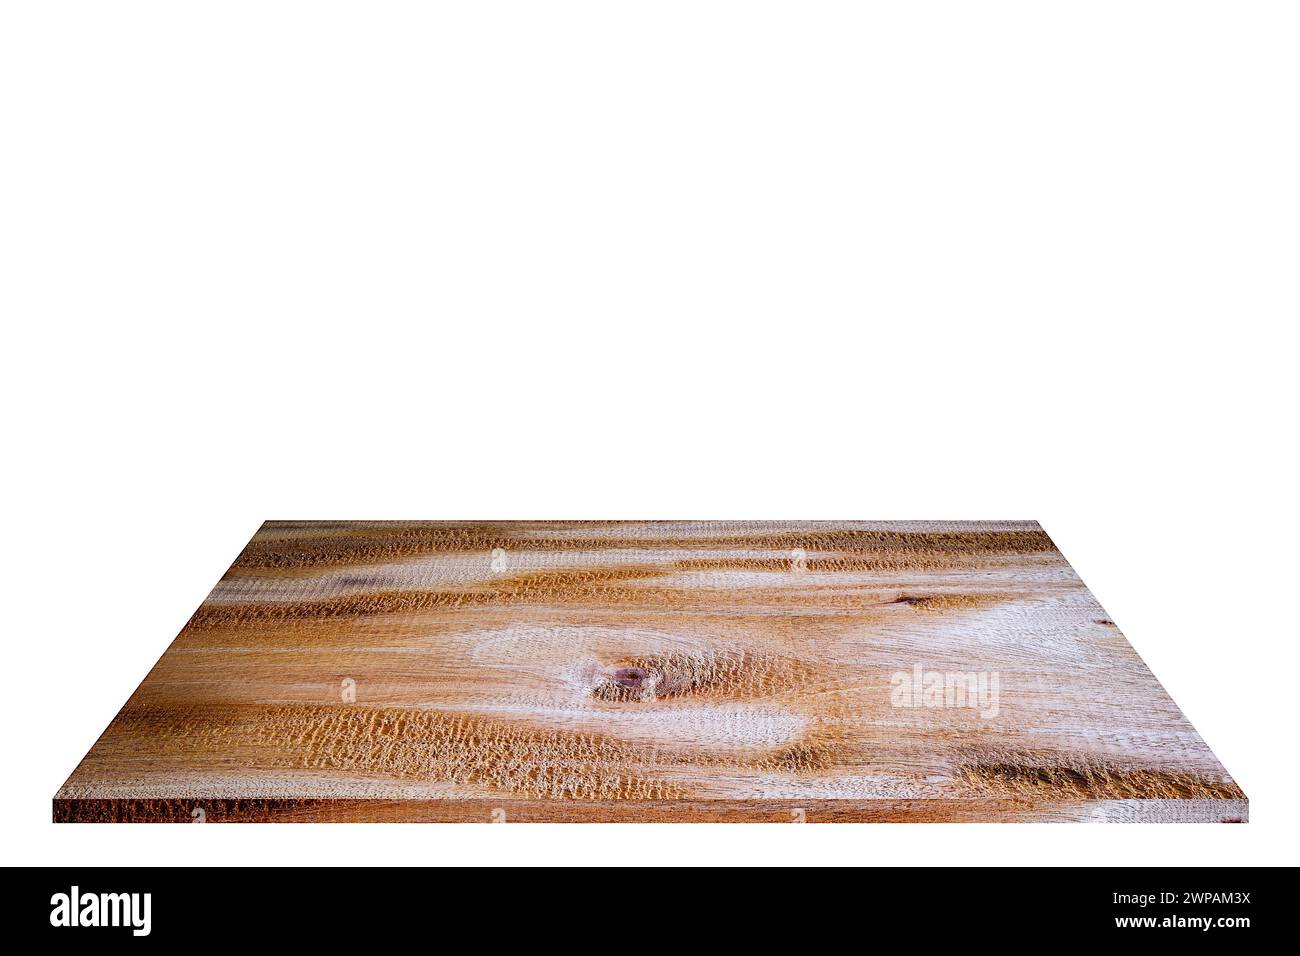 Leeres Holzdielmaterial auf quadratischer Form für Platzierung von Produkten und anderen Produkten, isoliert auf weißem Hintergrund Stockfoto